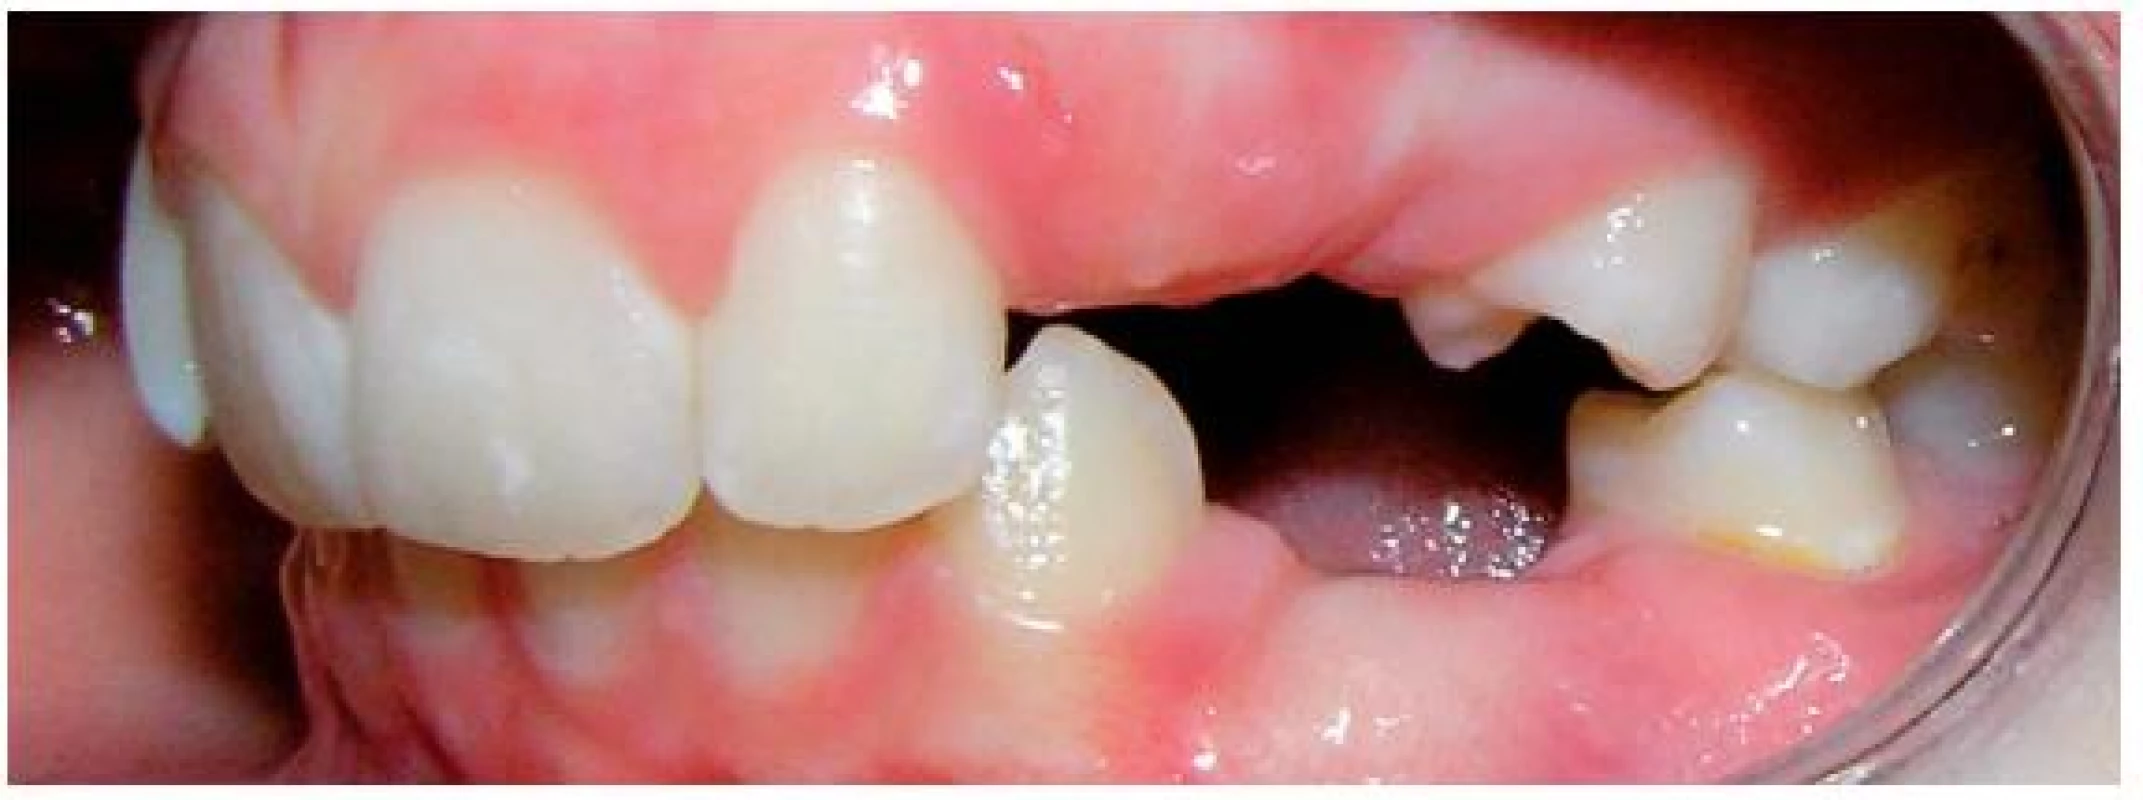 Chrup zleva po extrakcích stálých zubů